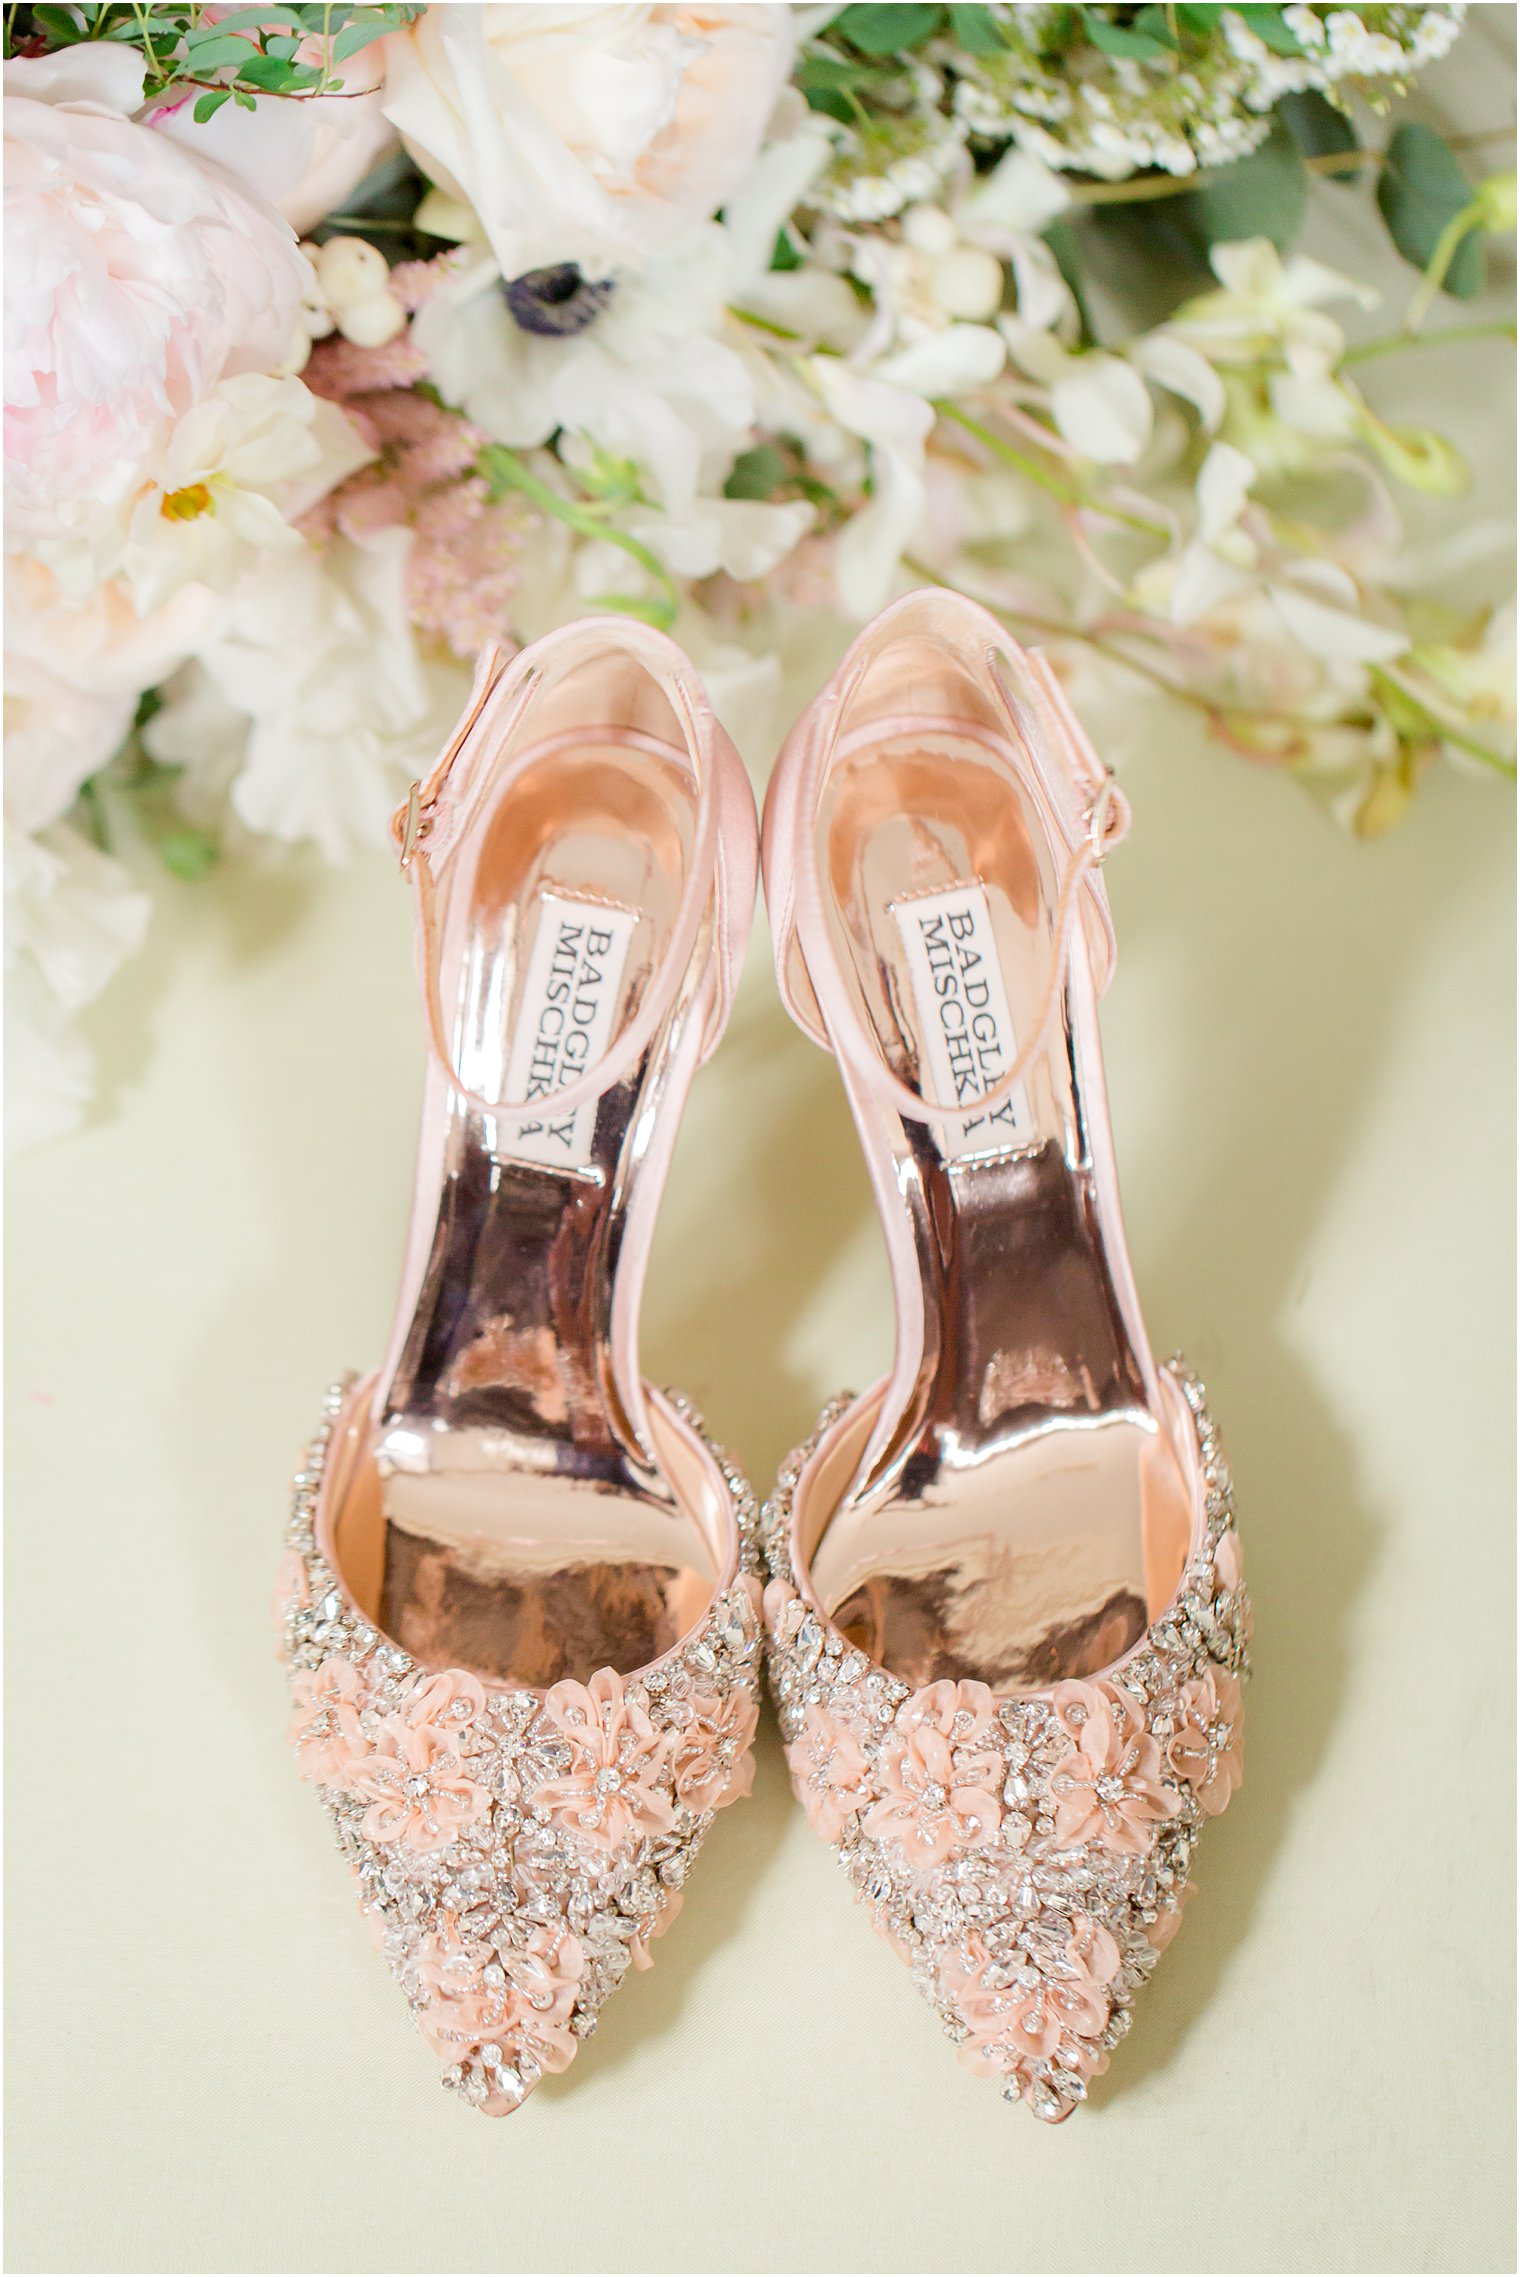 among Reporter Practical Wedding Shoe Inspiration - NJ Wedding Photographer | Idalia Photography